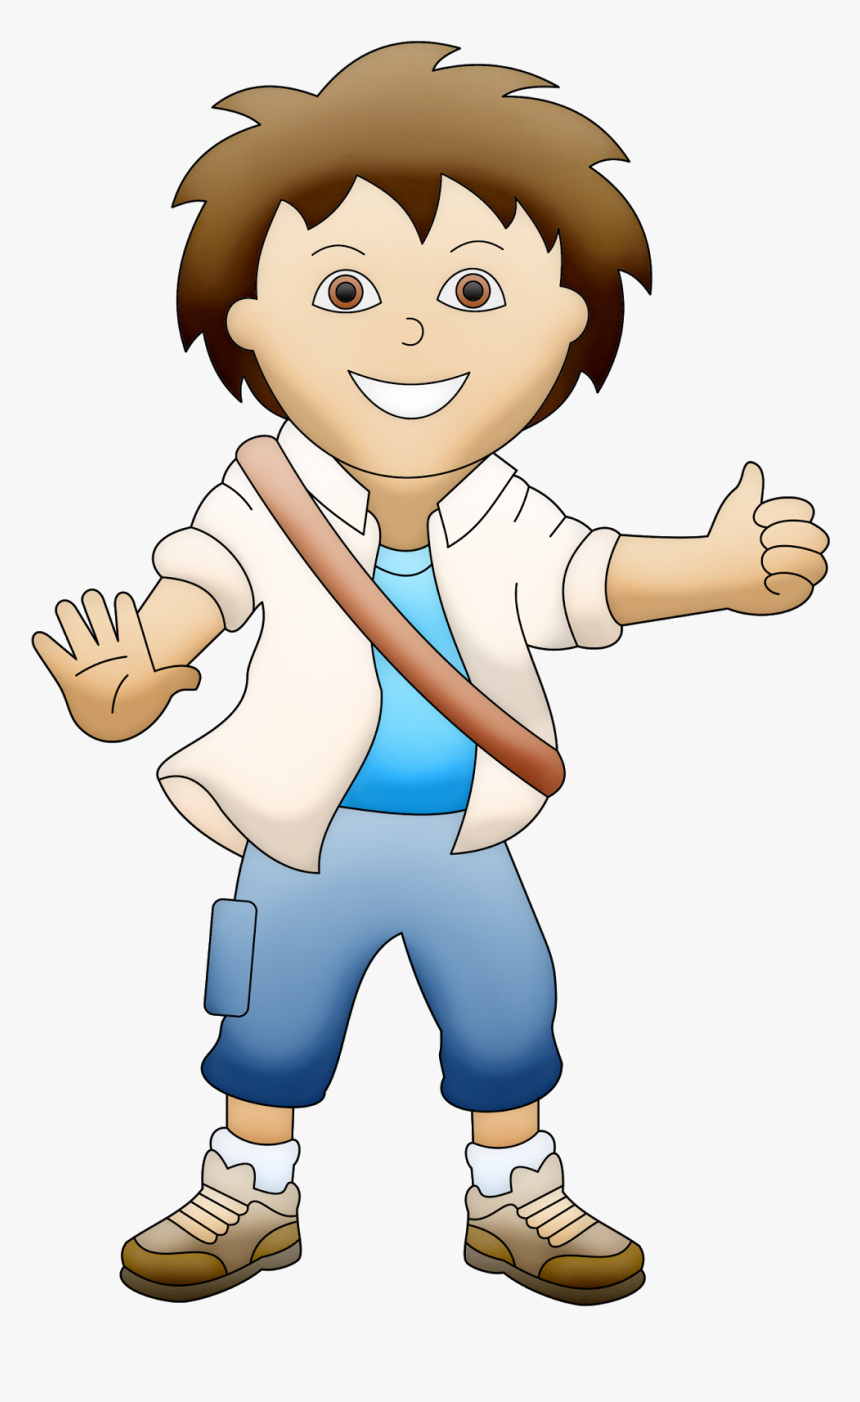 Dora The Explorer, Clip Art, Illustrations - Cartoon, HD Png Download, Free Download